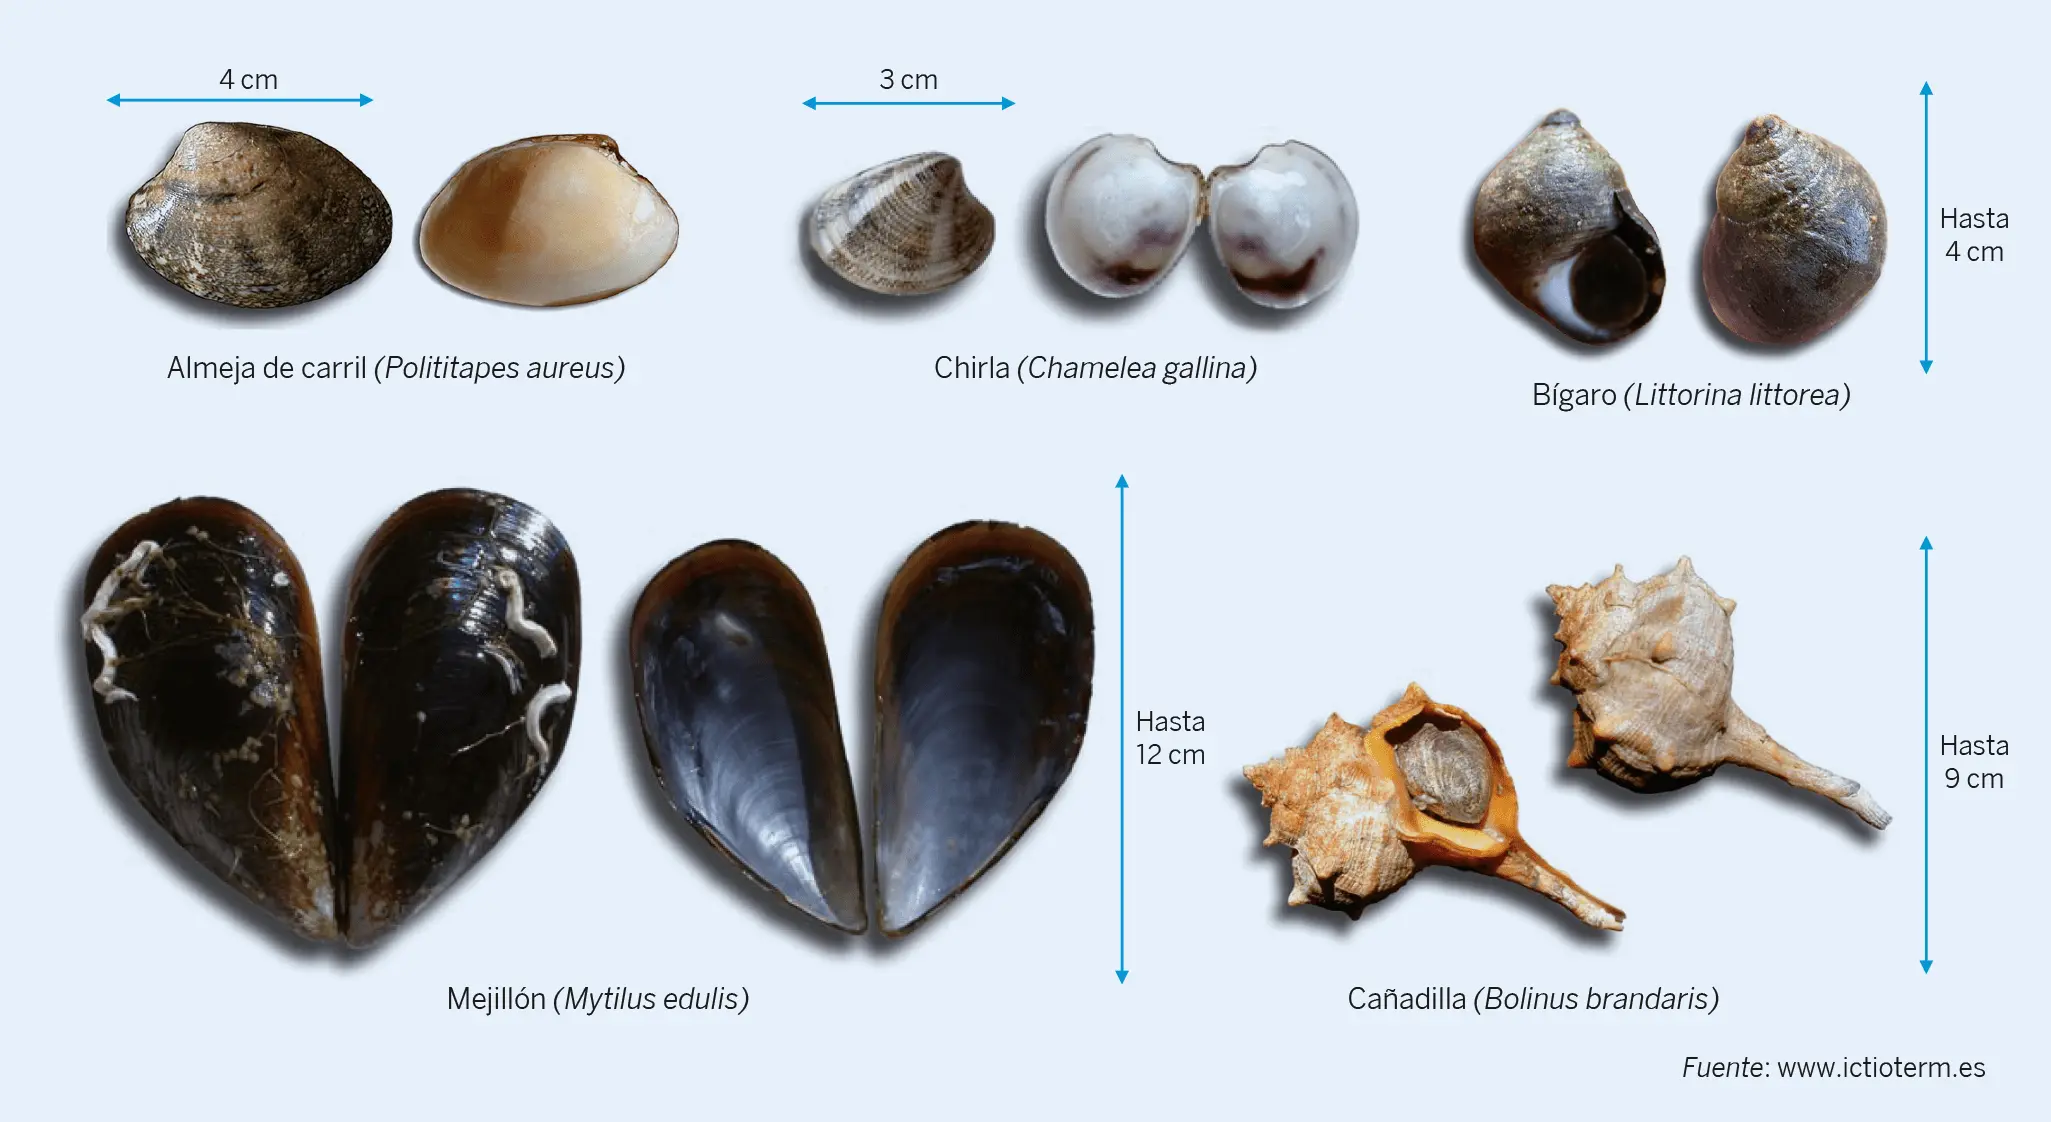 Figura 3. Especies de moluscos bivalvos y gasterópodos de consumo frecuente en España